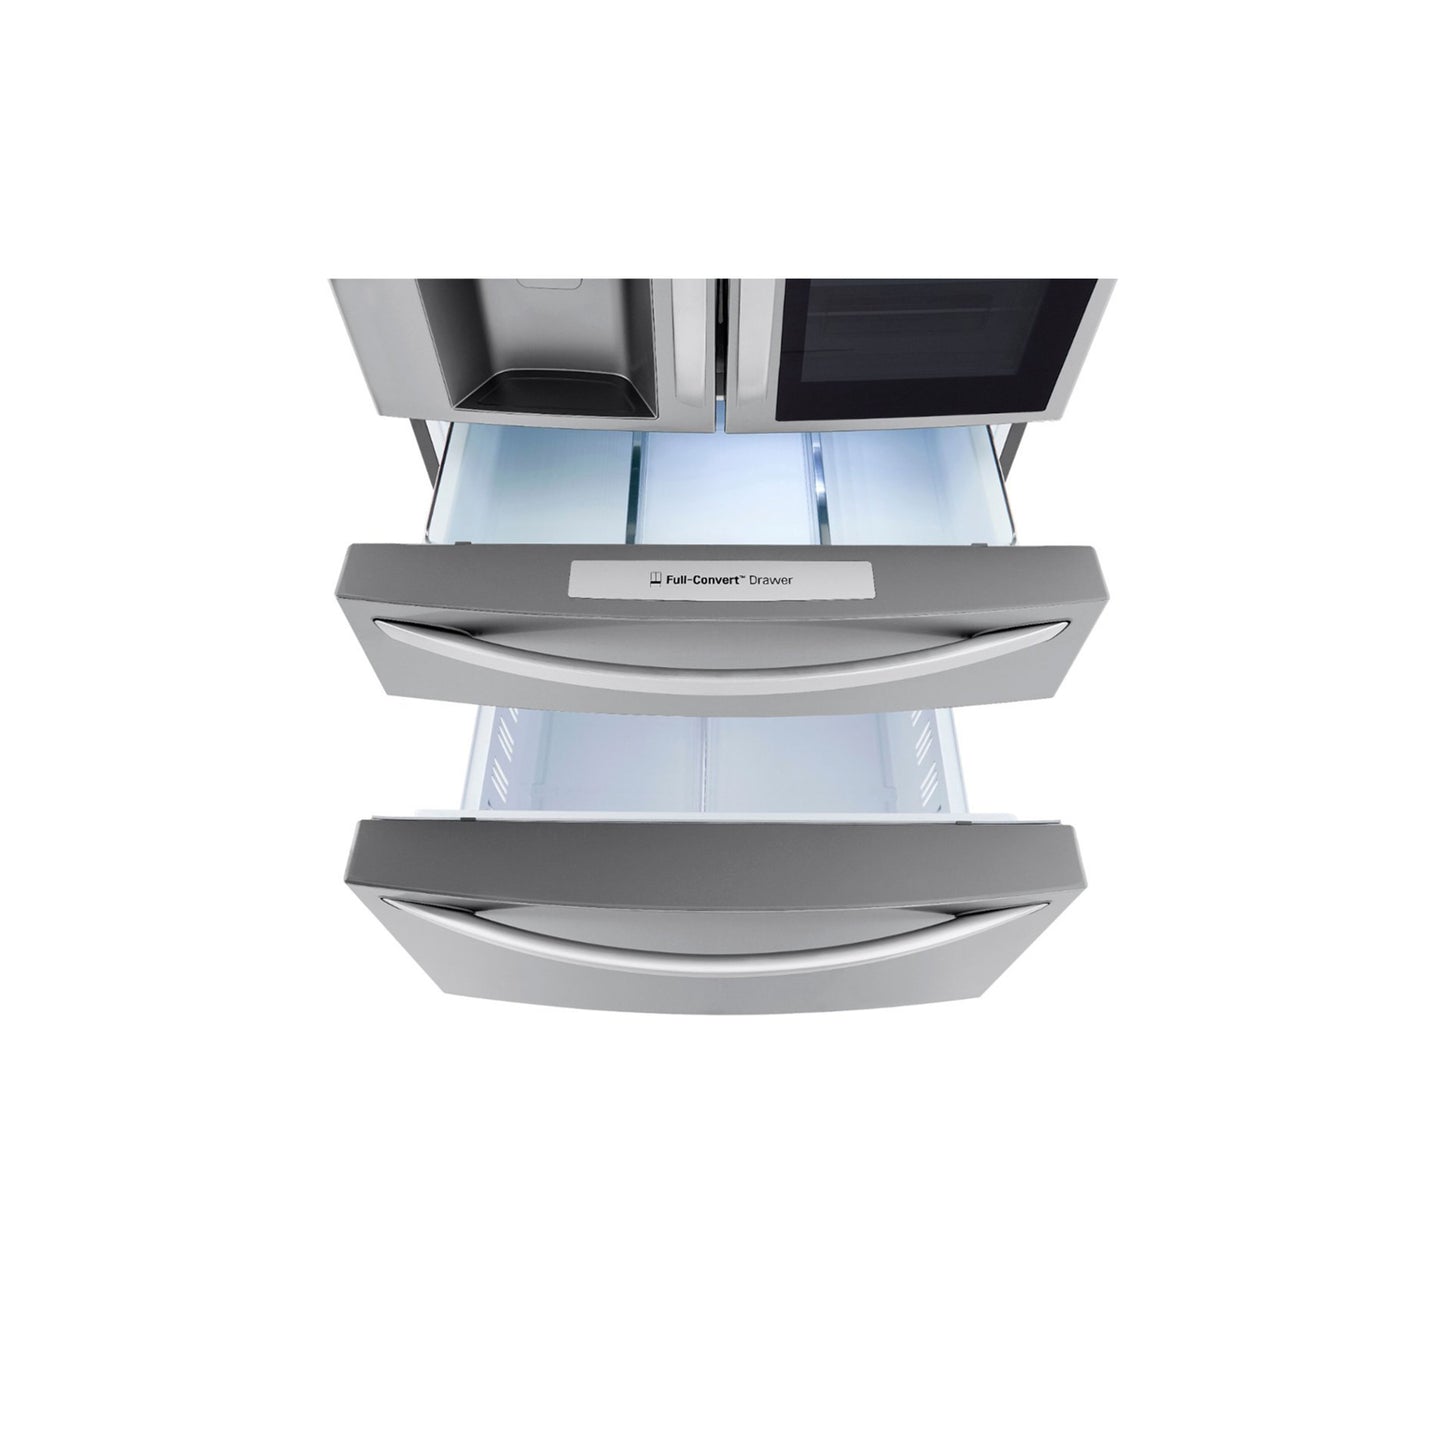 30 cu. ft. Smart InstaView® Door-in-Door® Refrigerator with Craft Ice™